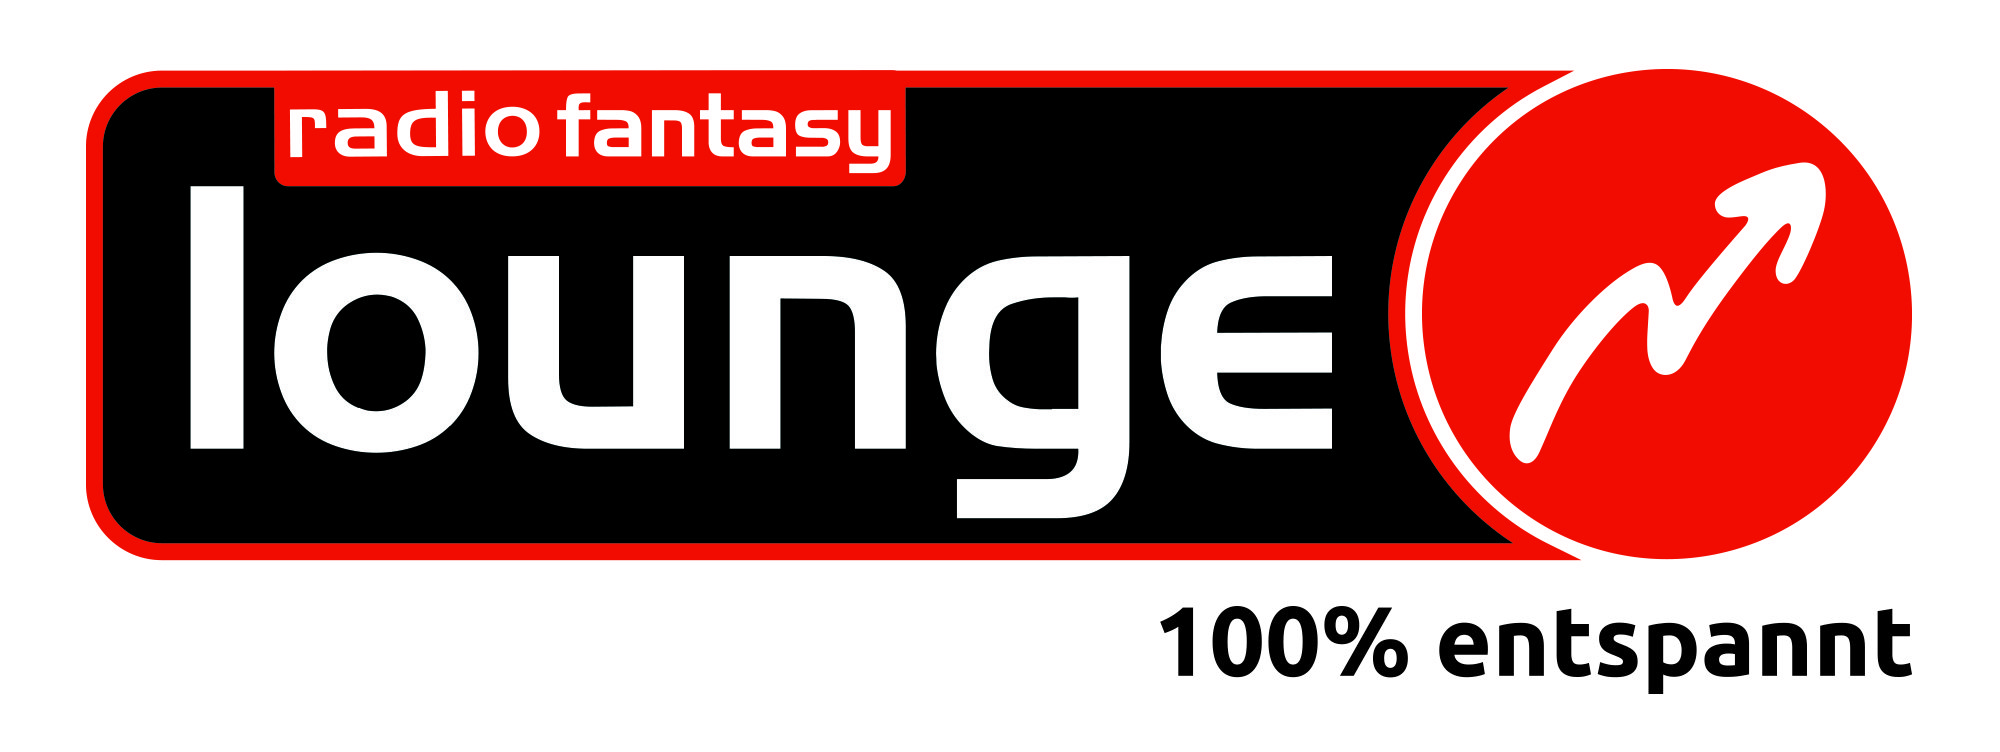 Fanatsy Logo Lounge